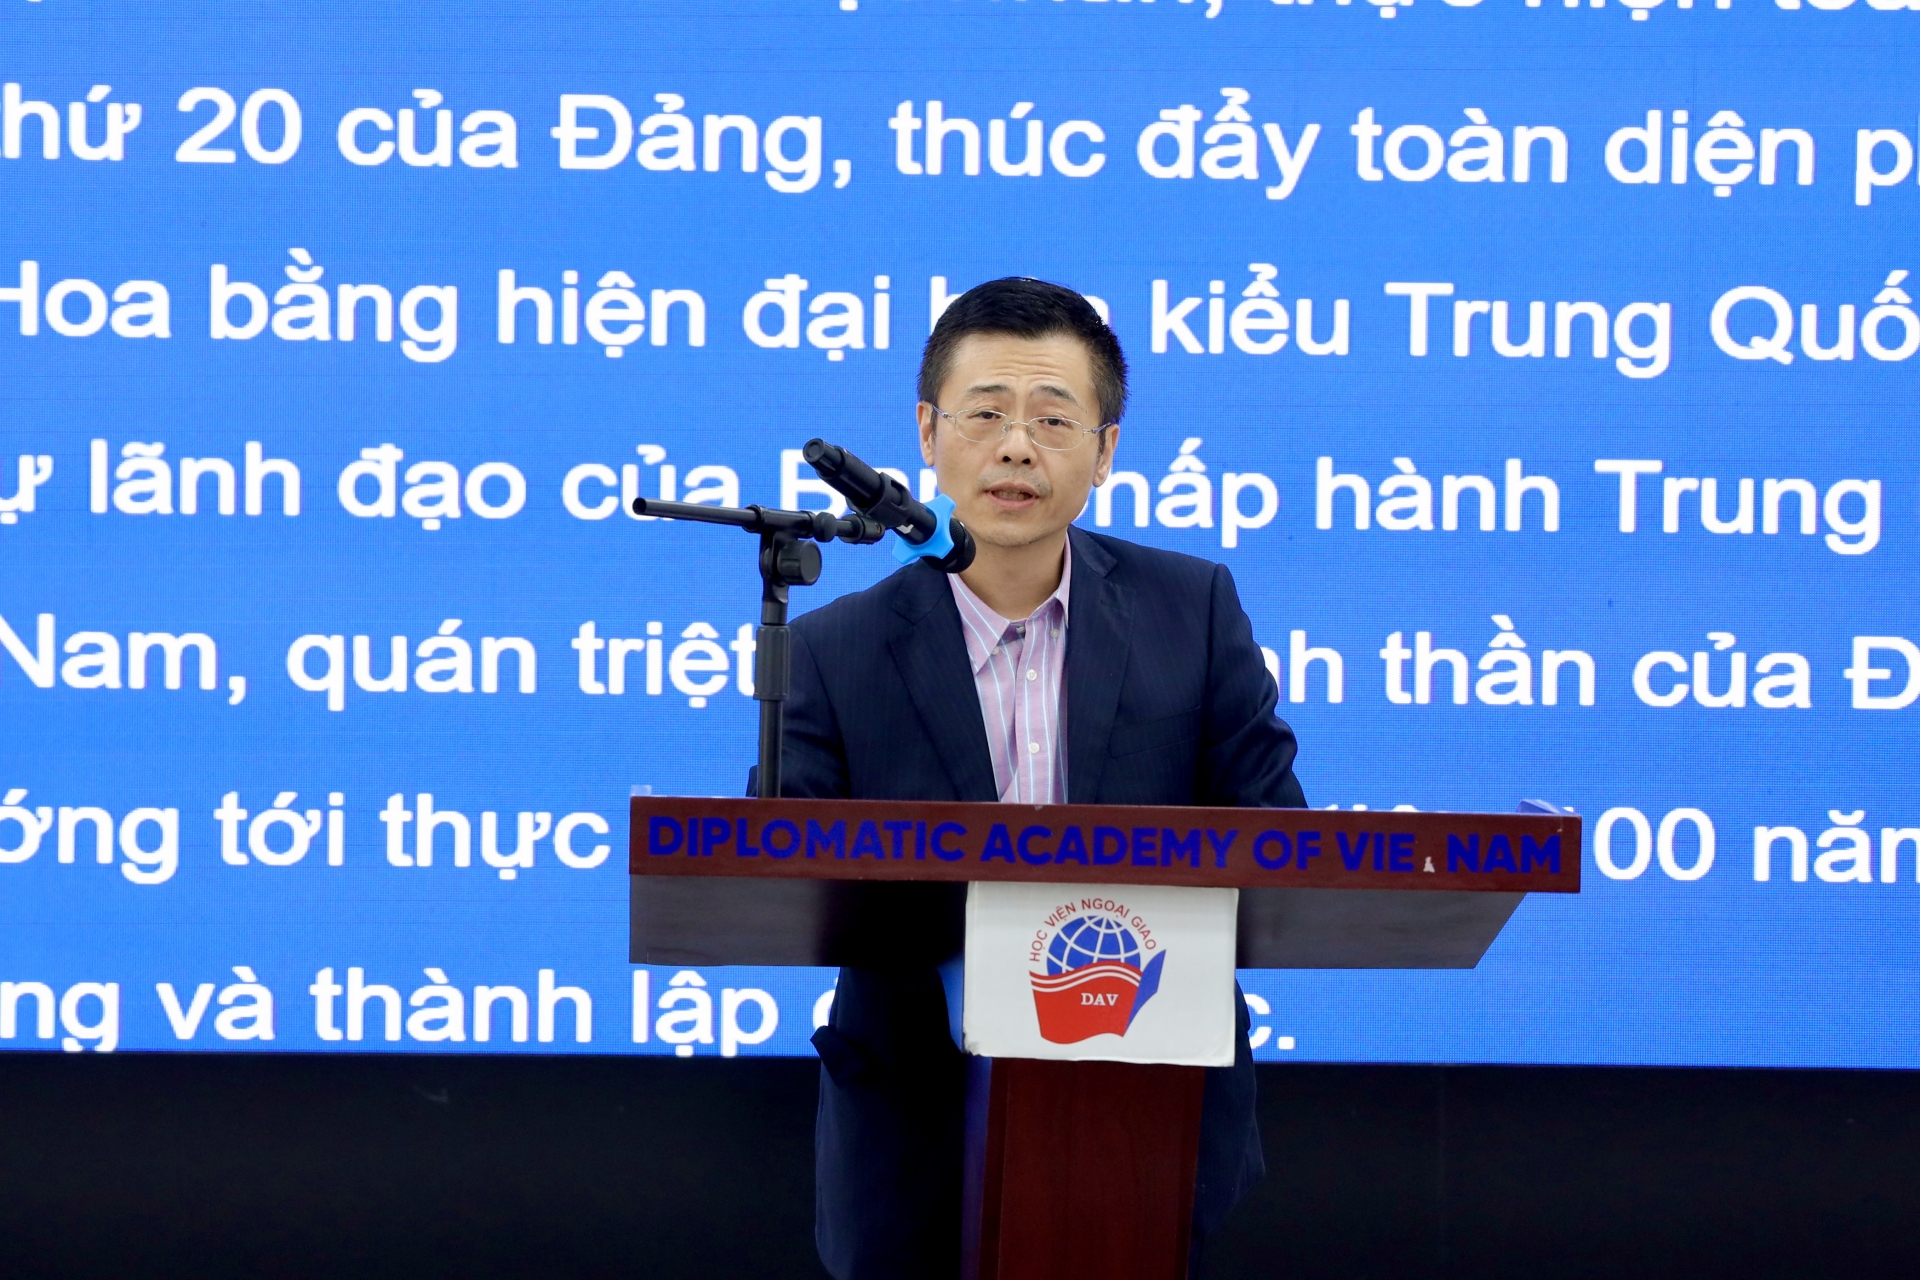 中华人民共和国驻越南社会主义共和国大使馆公使周文发表讲话。